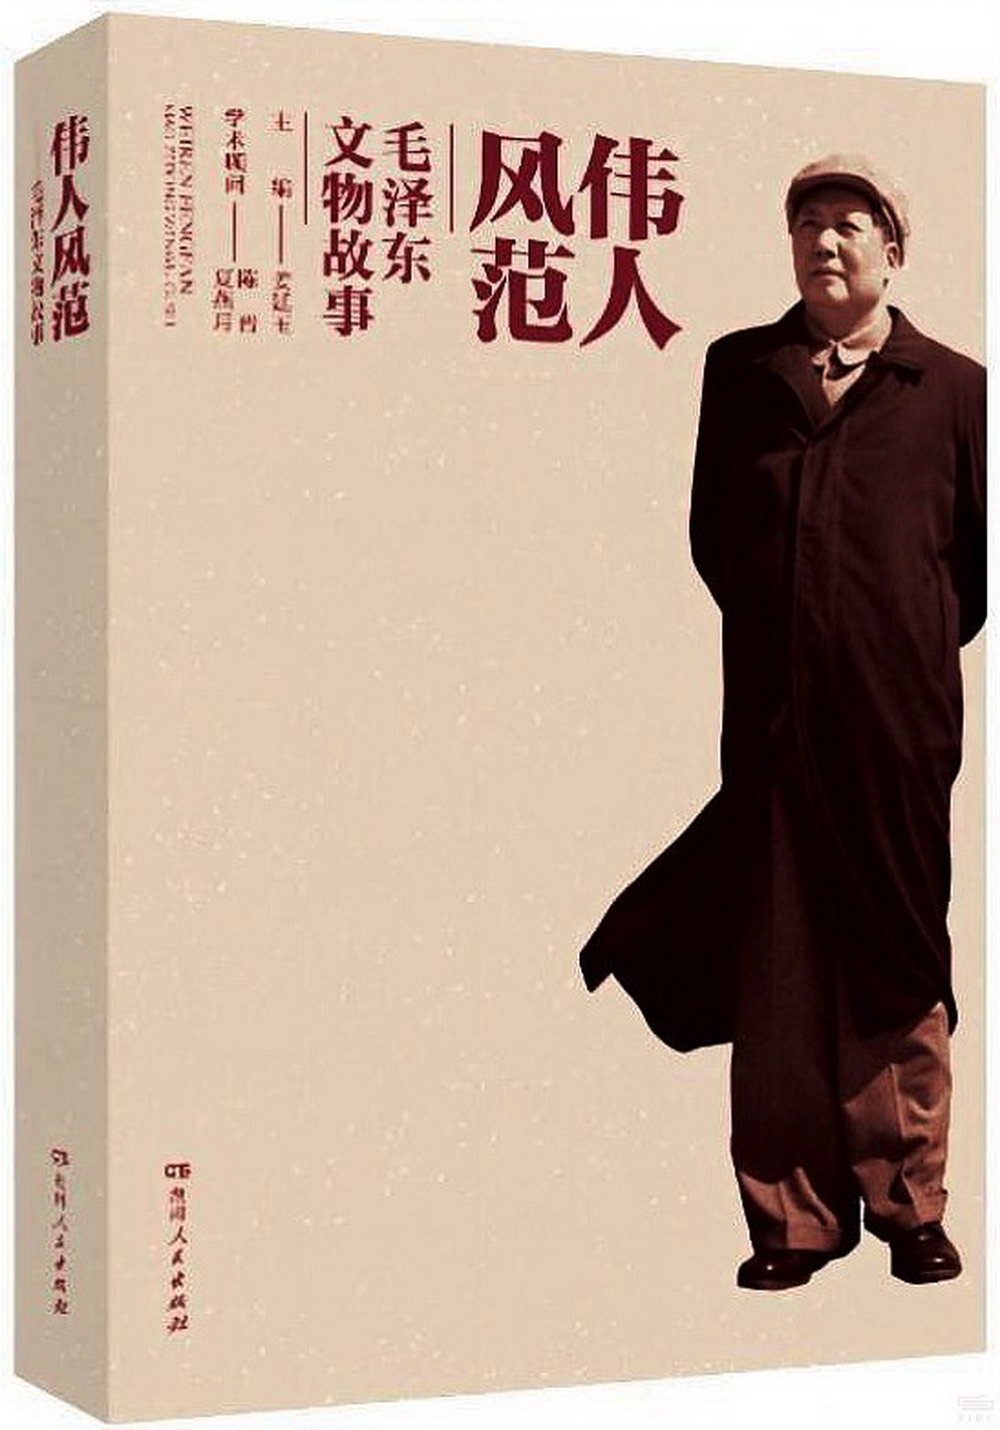 偉人風範--毛澤東文物故事